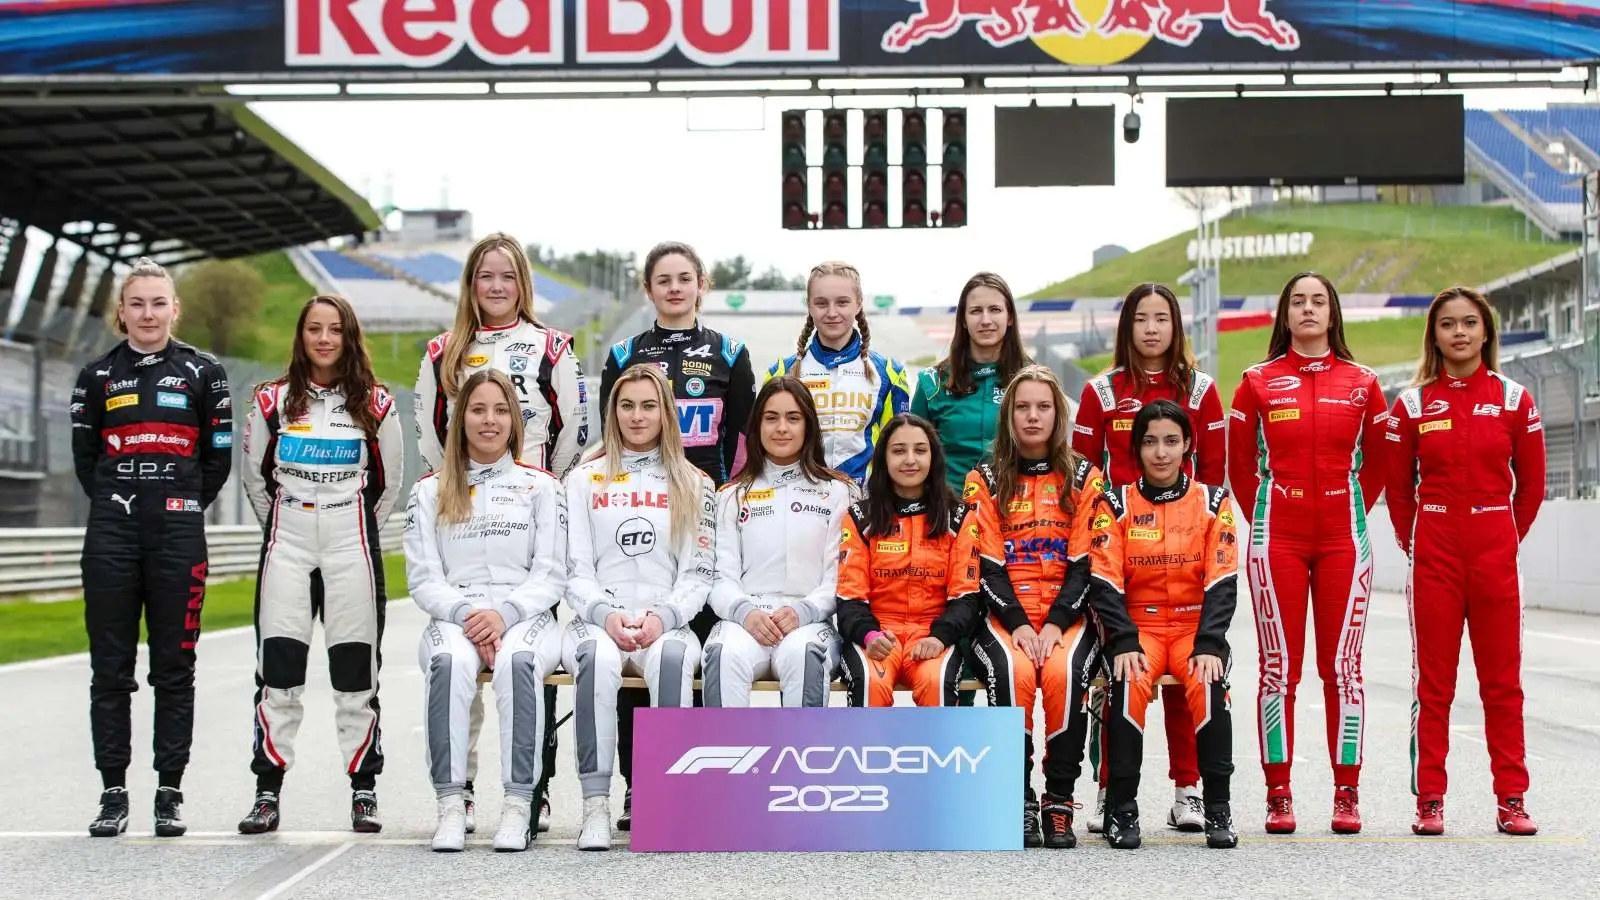 The 2023 F1 Academy line up. Austria, April 2023.